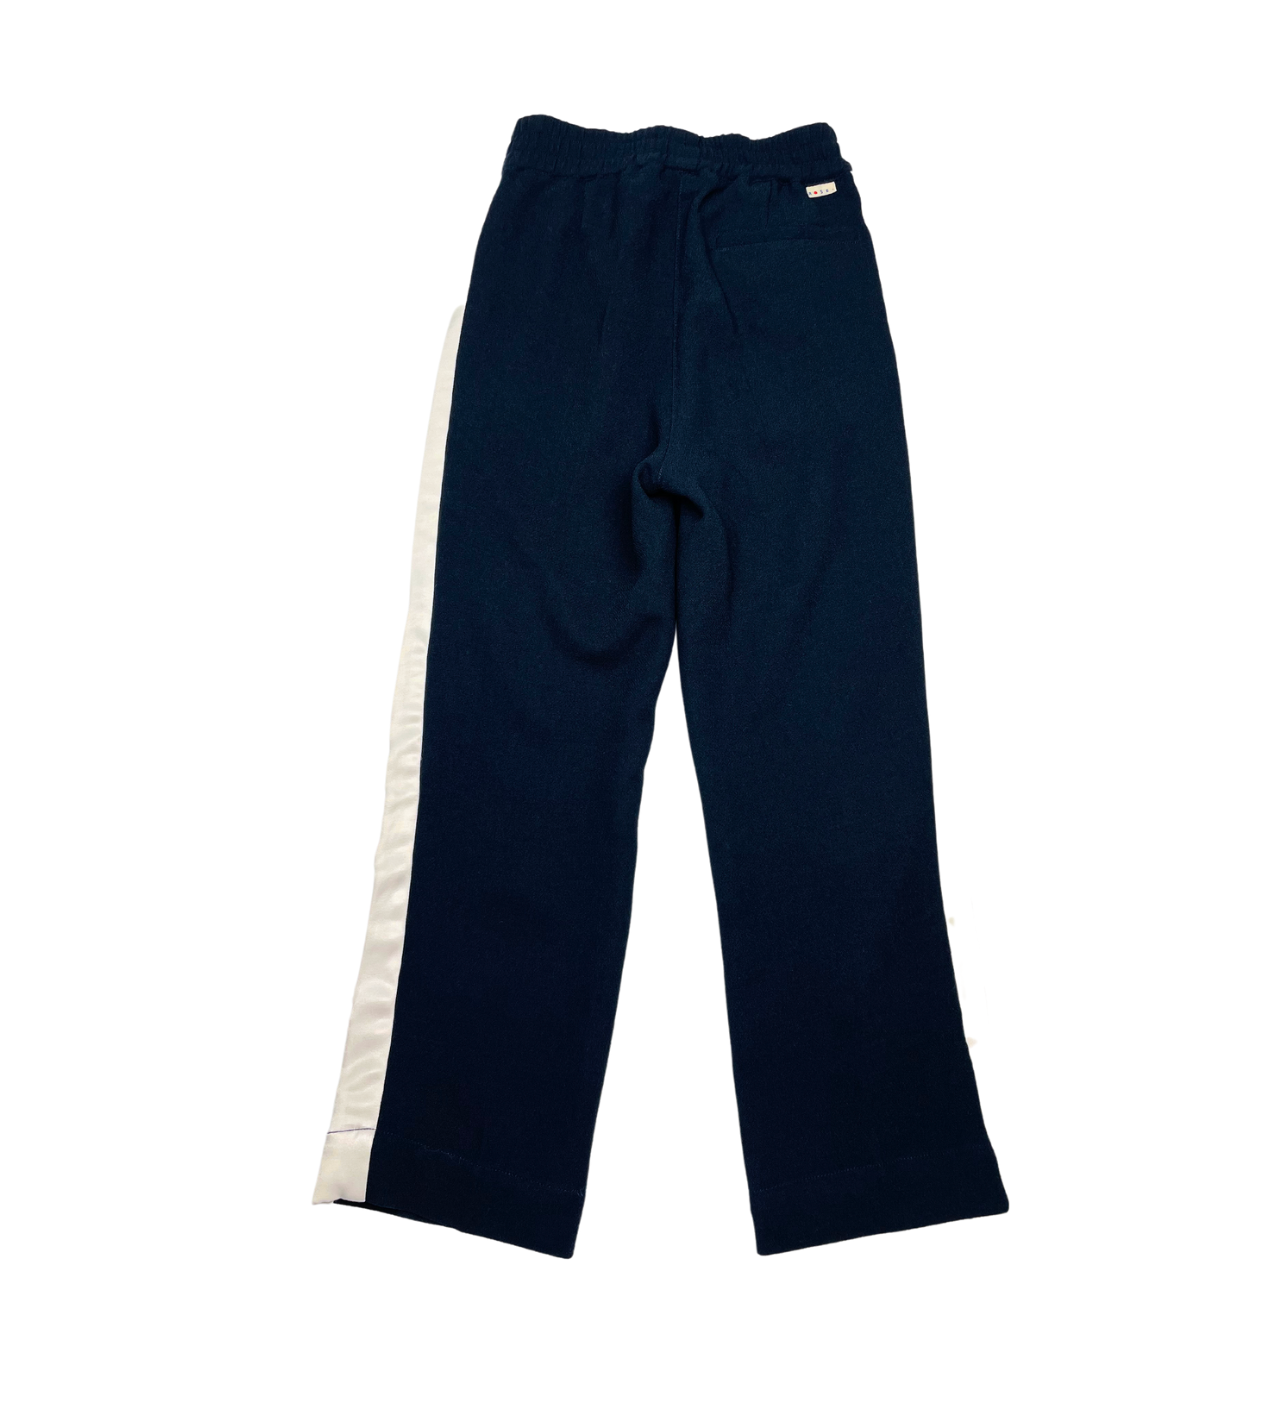 BELLEROSE - Pantalon noir à bandes blanches - 6 ans